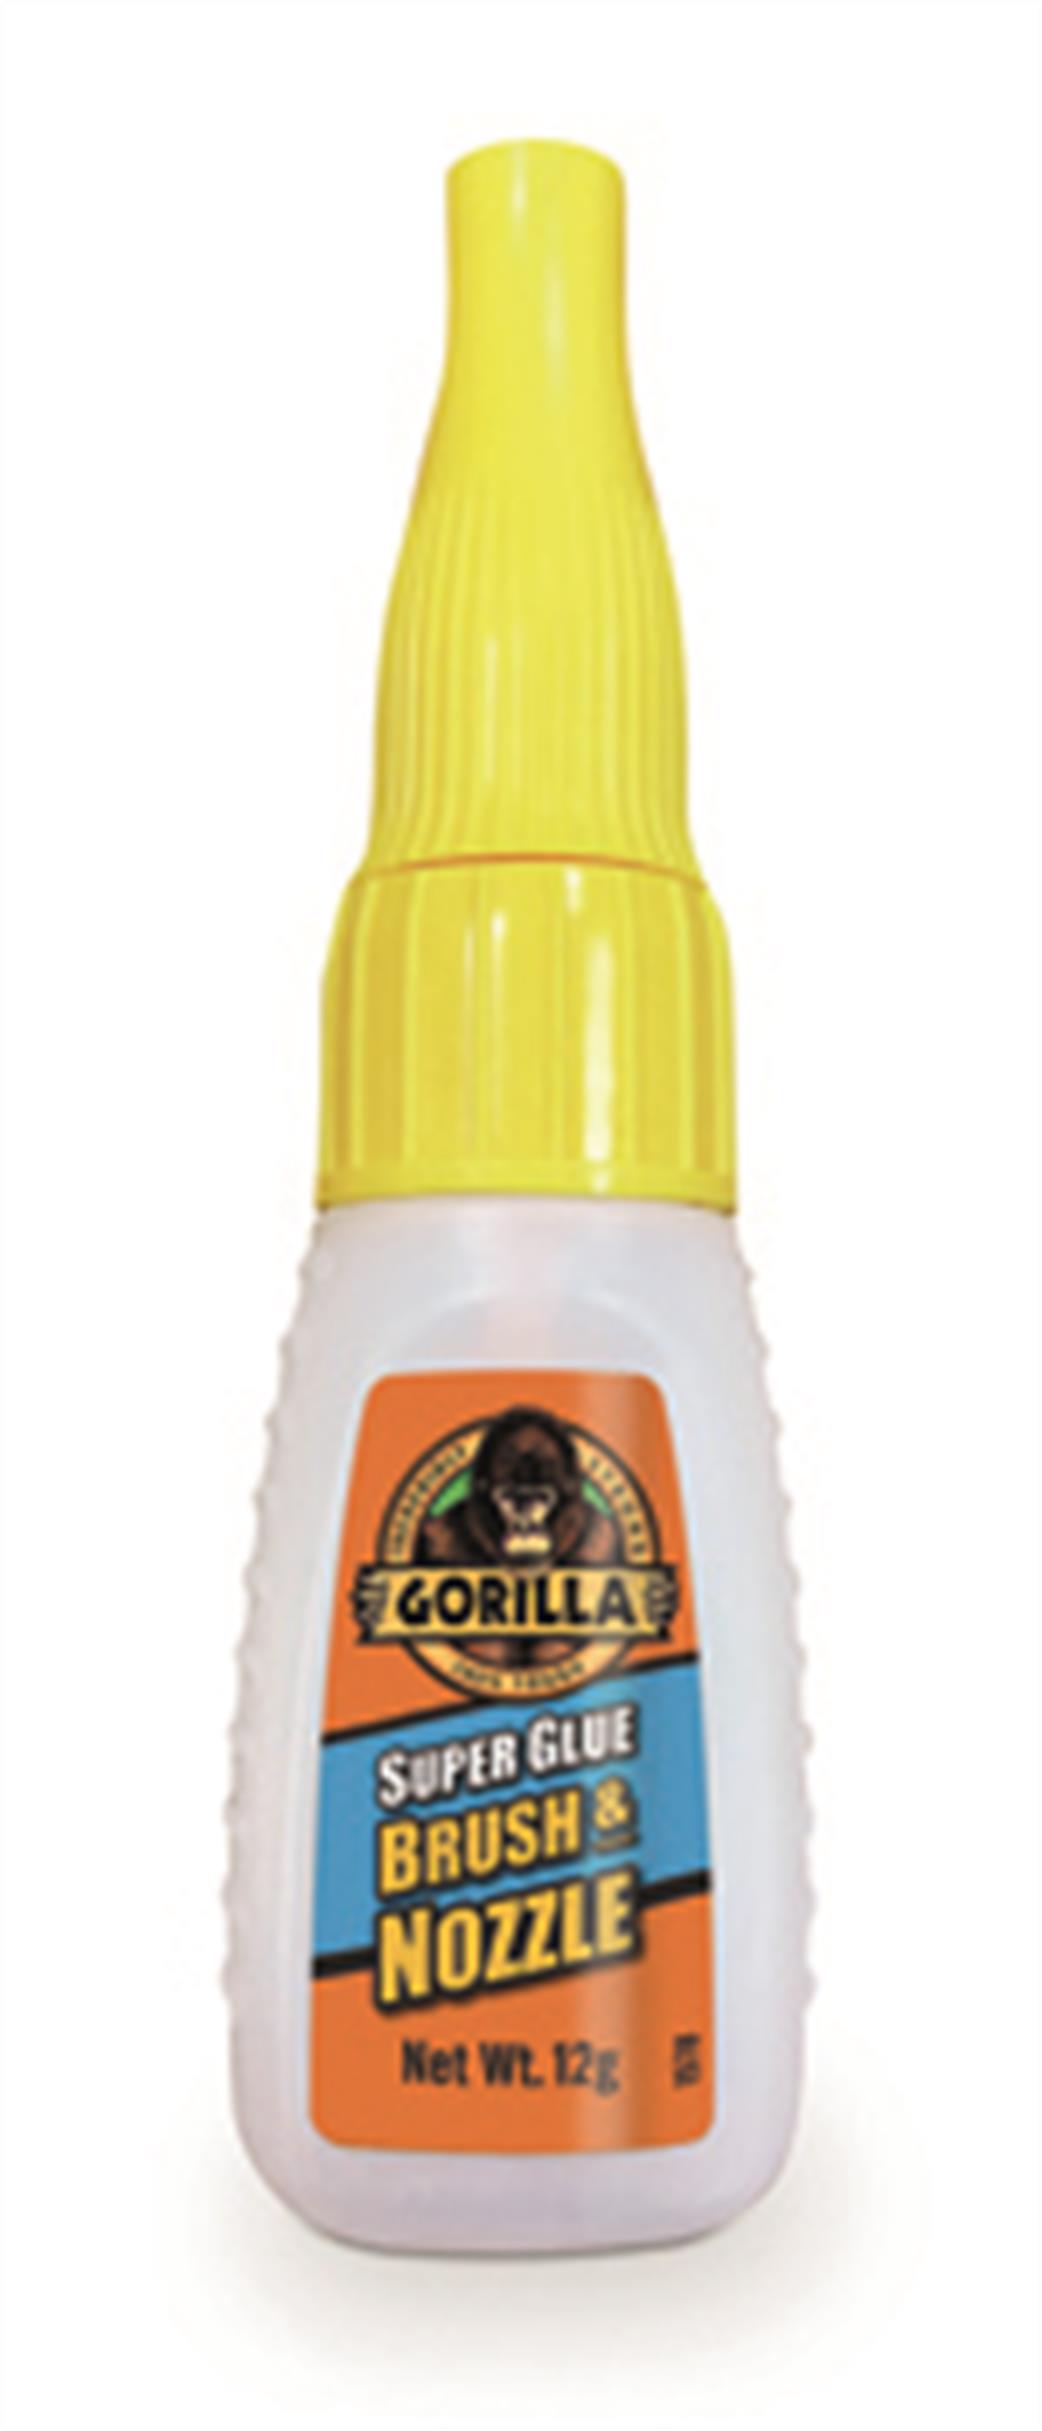 Gorilla  1580 Super Glue Brush & Nozzle 12g